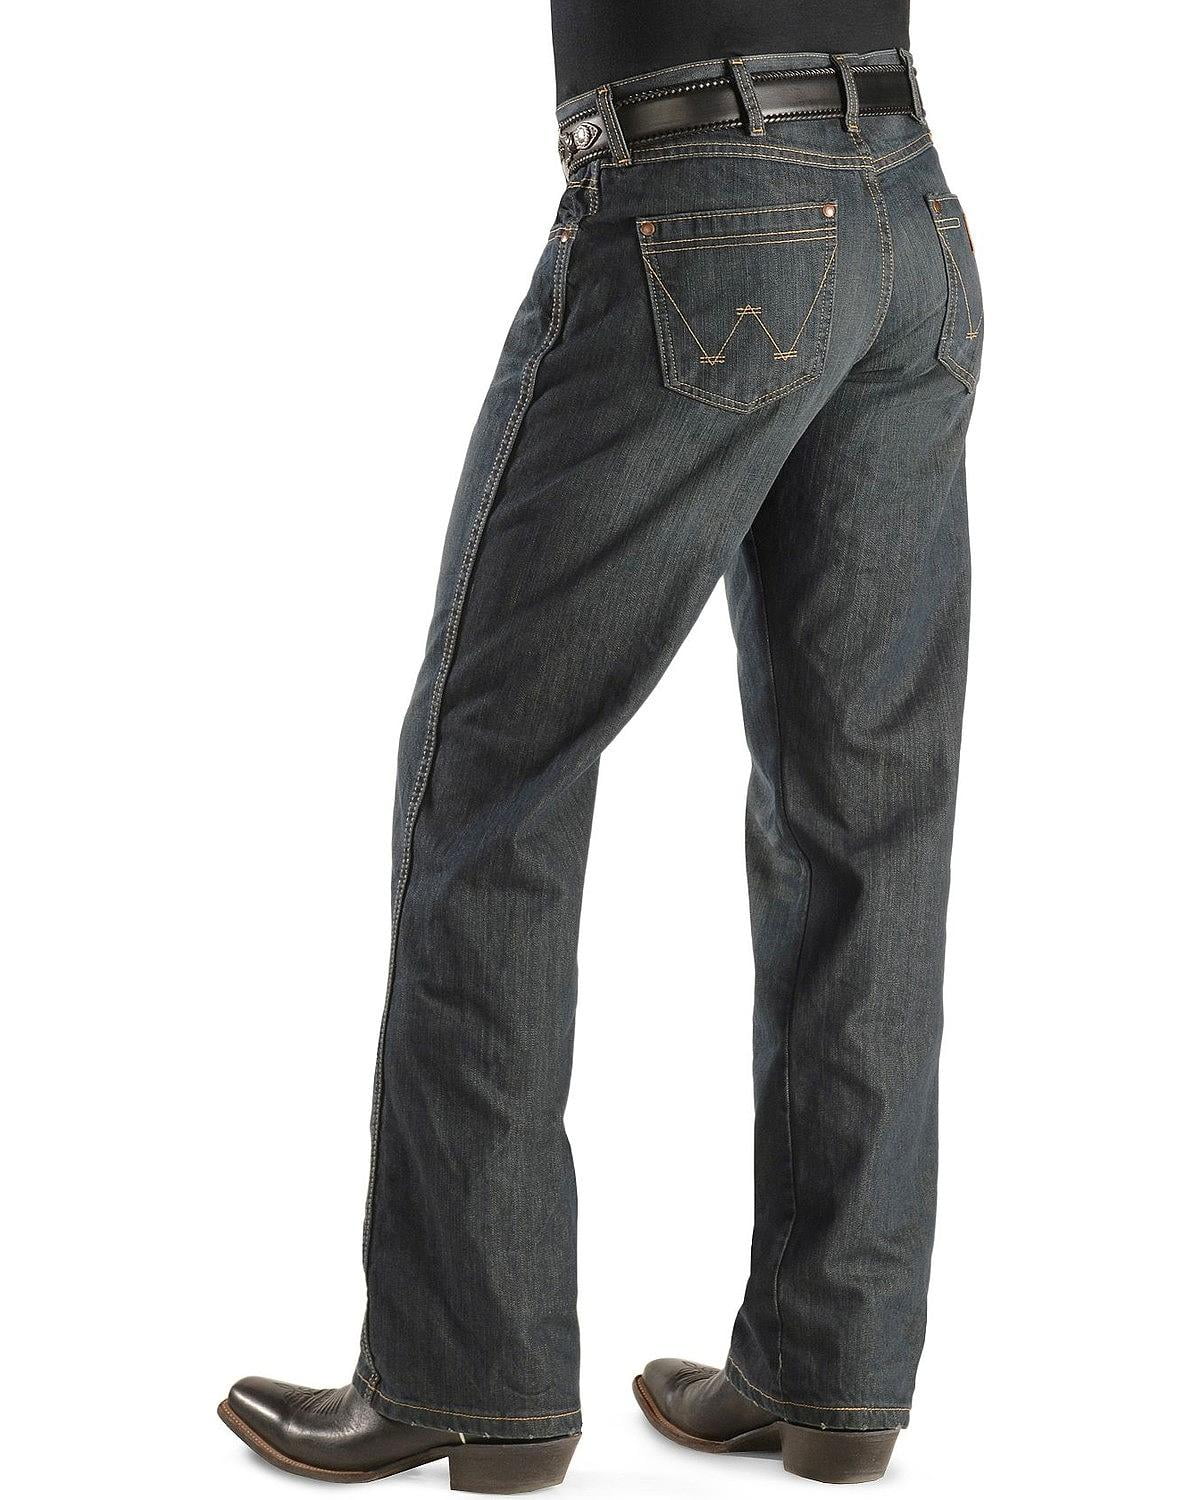 Wrangler - Wrangler Men's Jeans Worn Retro Boot Cut - Wrt20wb - Walmart ...